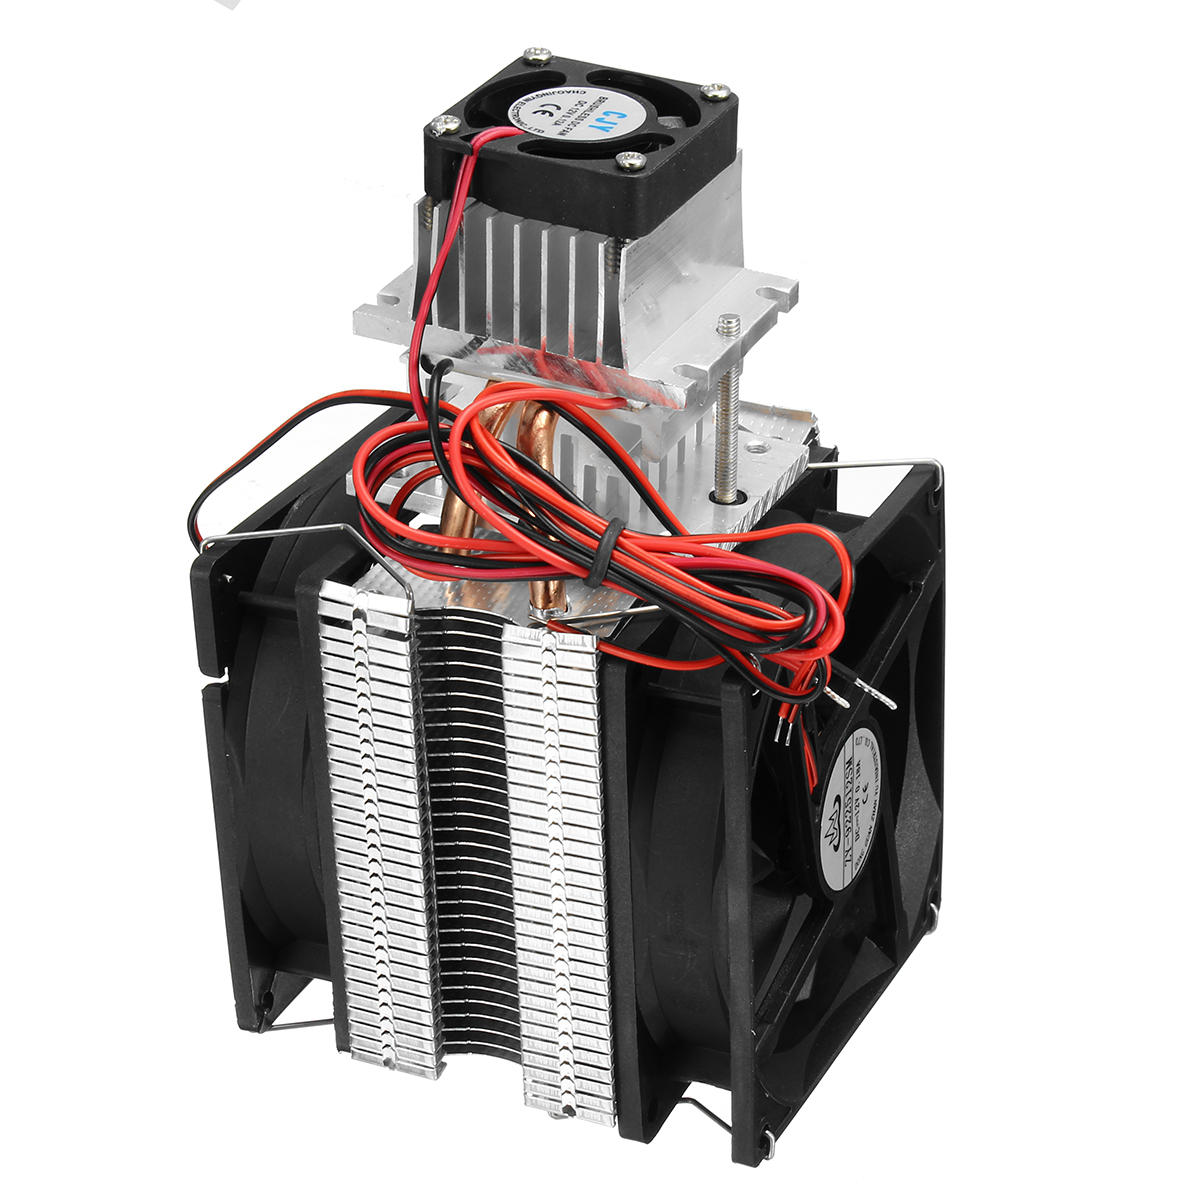 

12V Semiconductor Air Refrigeration Термоэлектрическая система охлаждения Пельтье